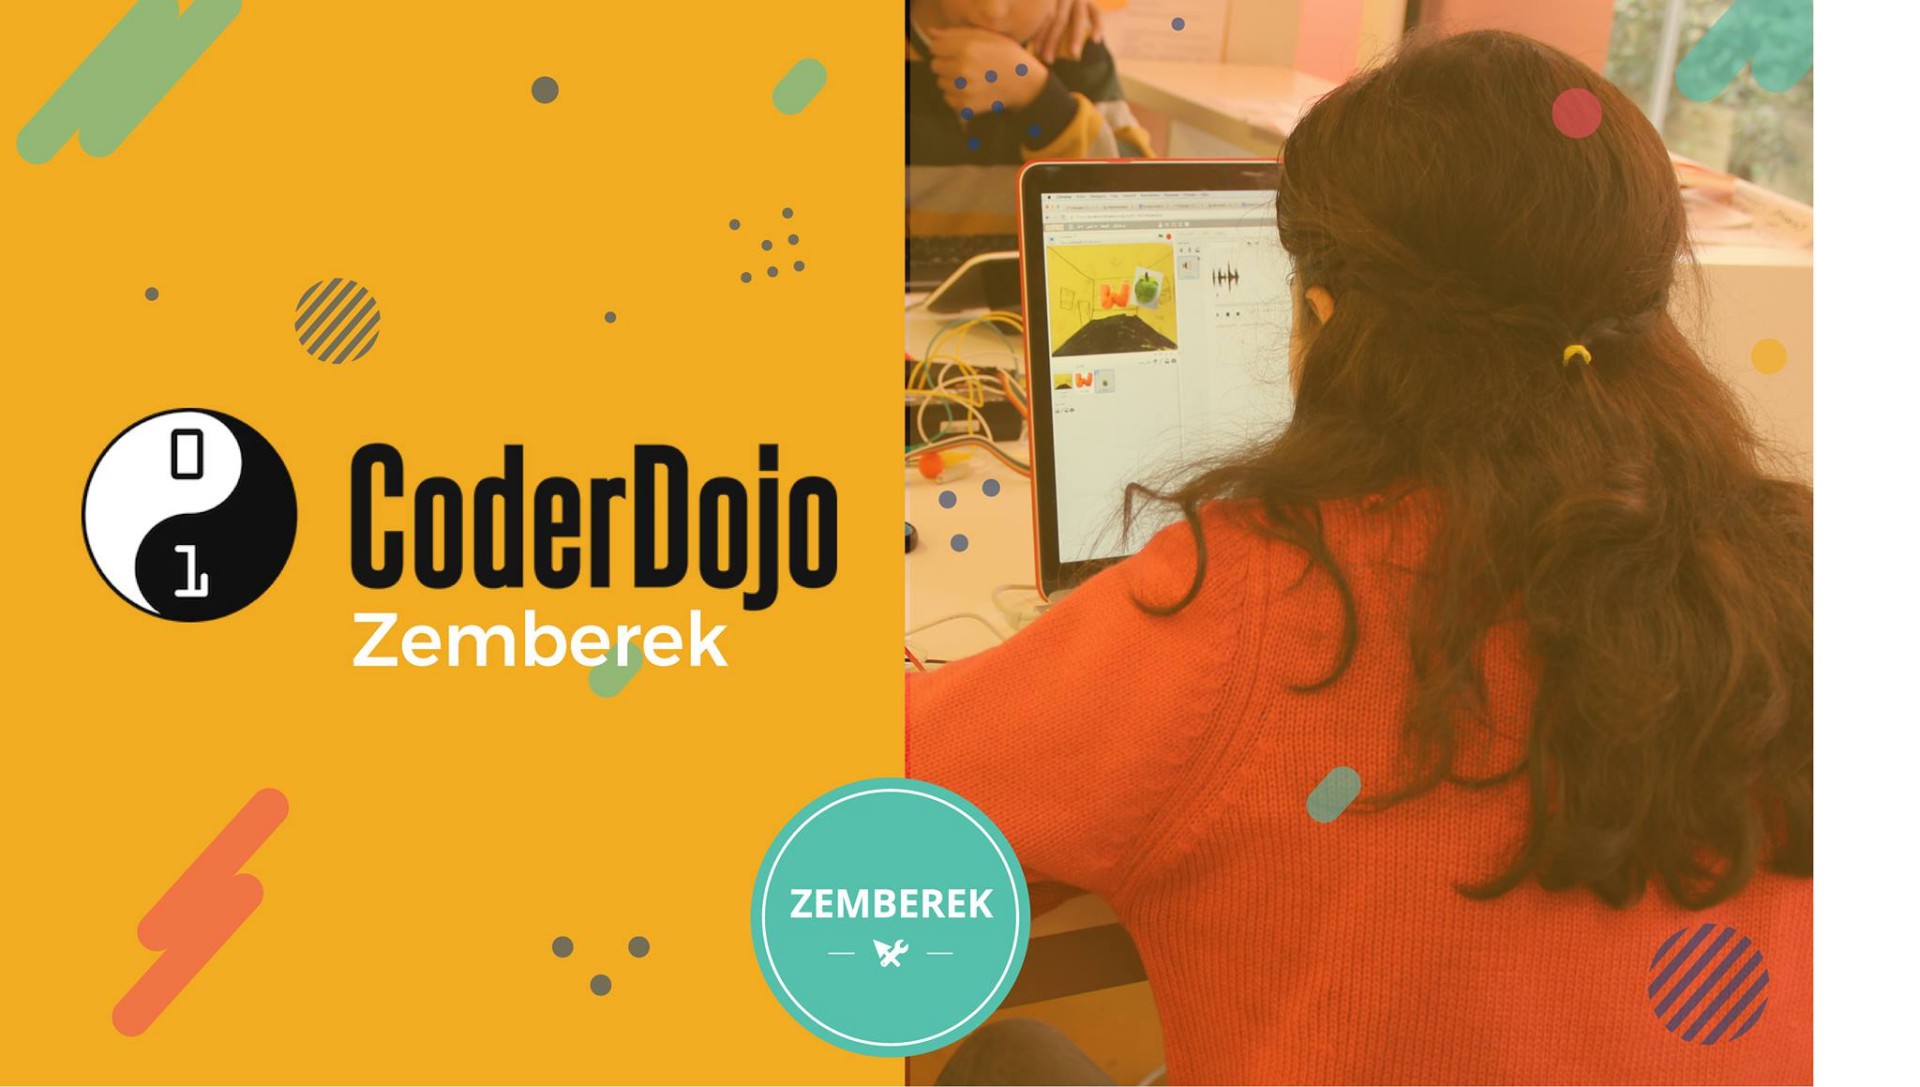 CoderDojo’da çocuklara ücretsiz kodlama öğretilecek